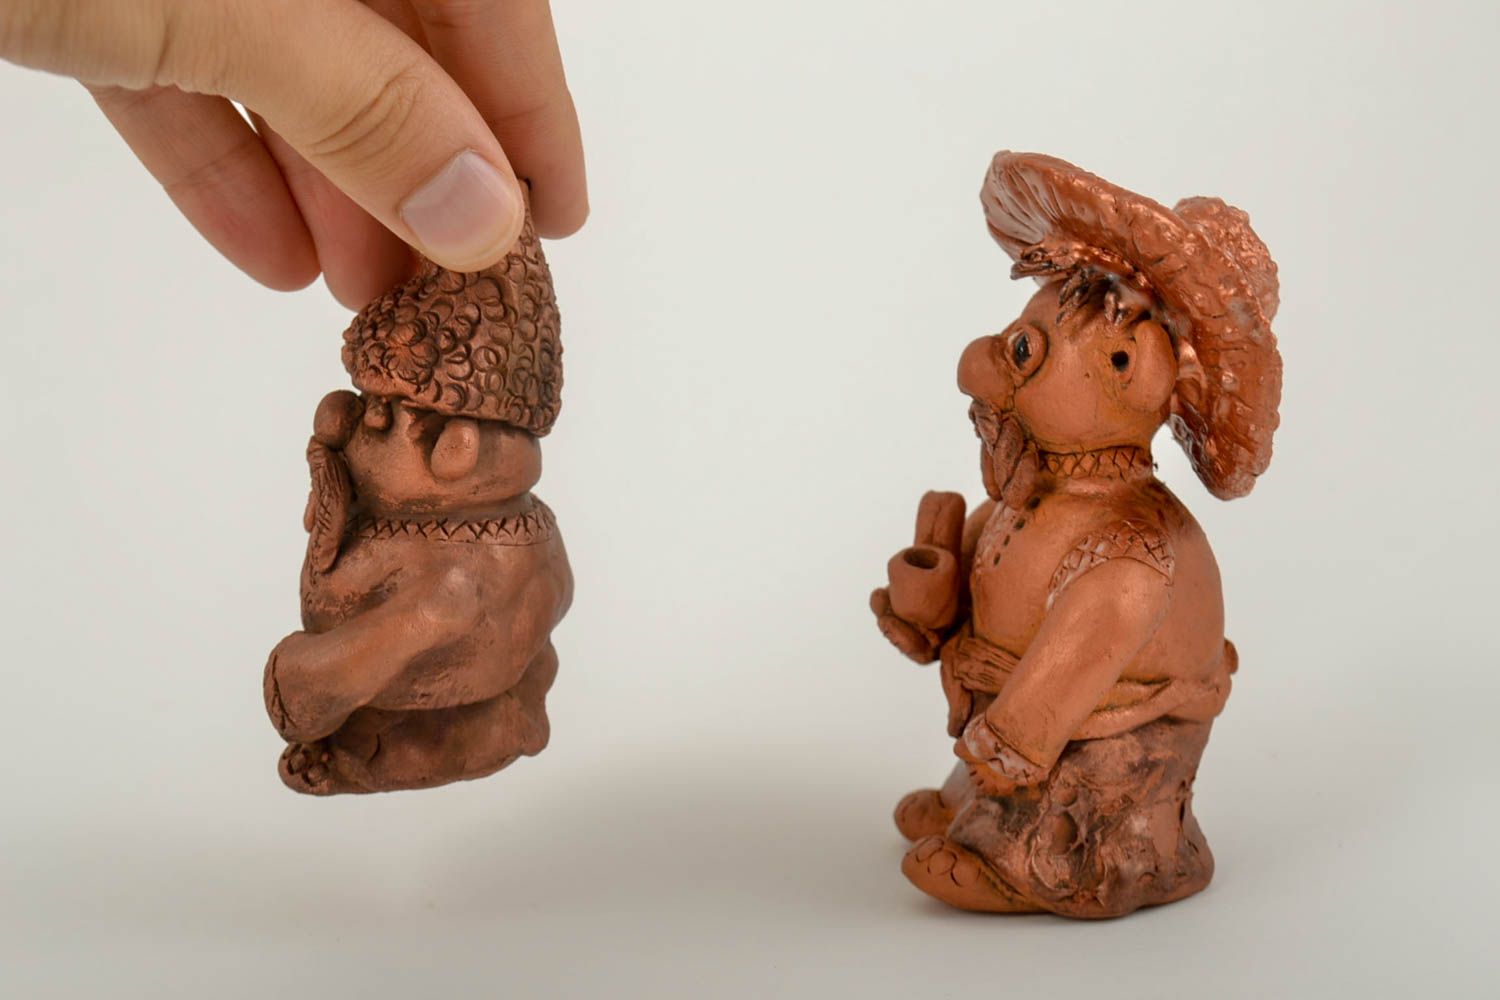 Ceramic figurines homemade home decor miniature figurines souvenir ideas photo 3